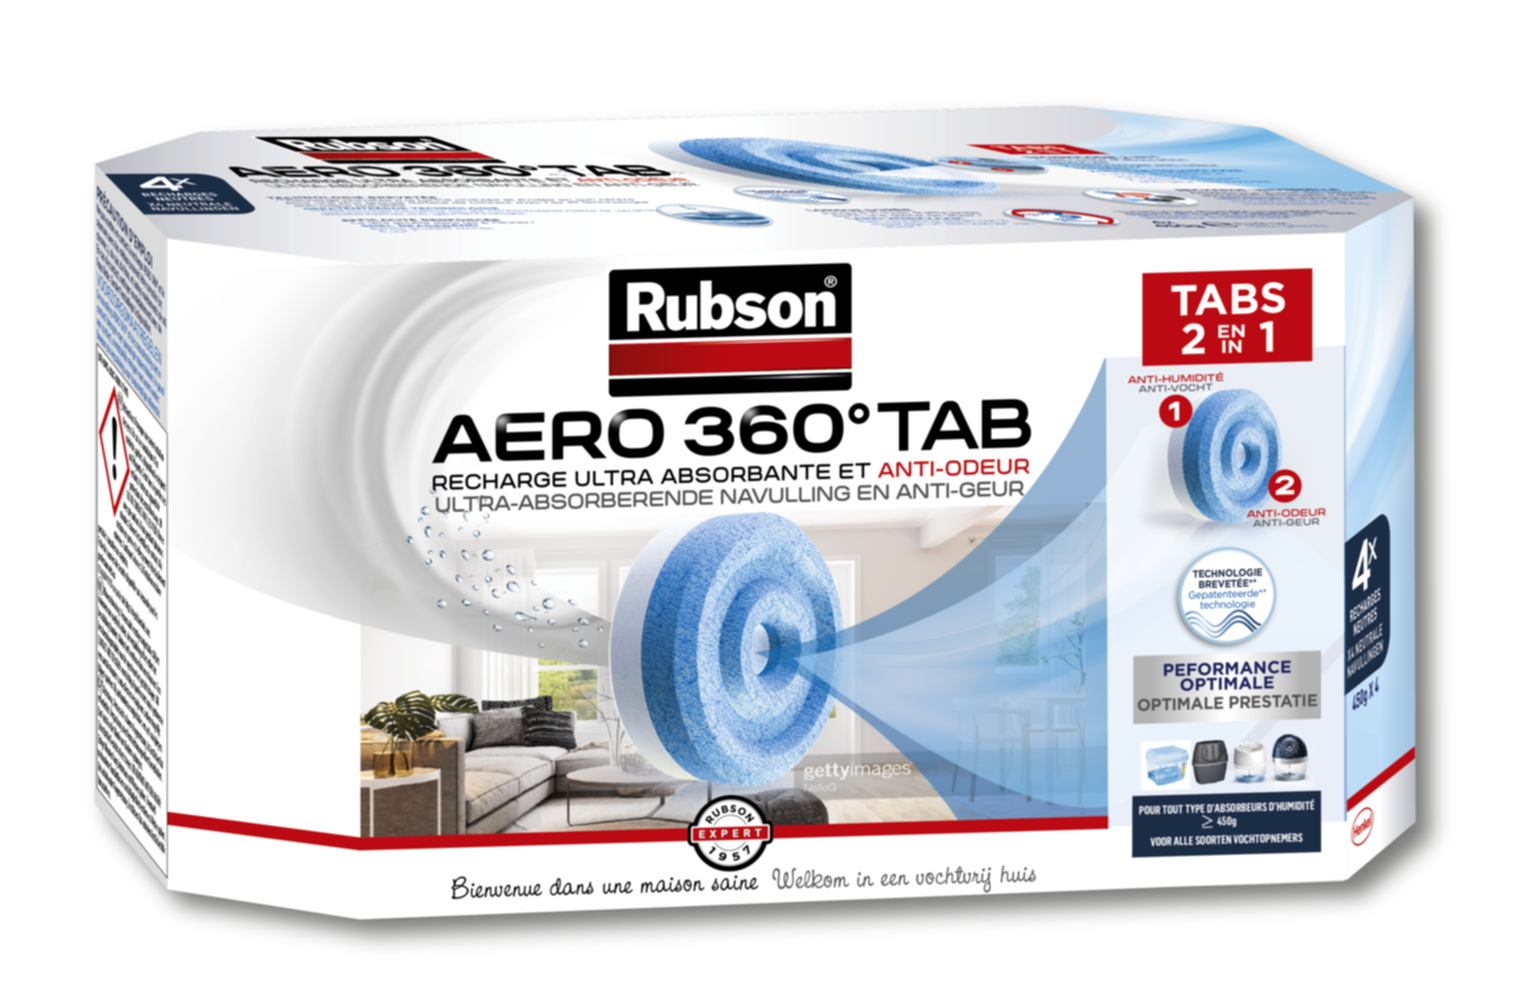 Absorbeur d'humidité Rubson Aero 360° 20 m² + 3 recharges dont 2 gratuites